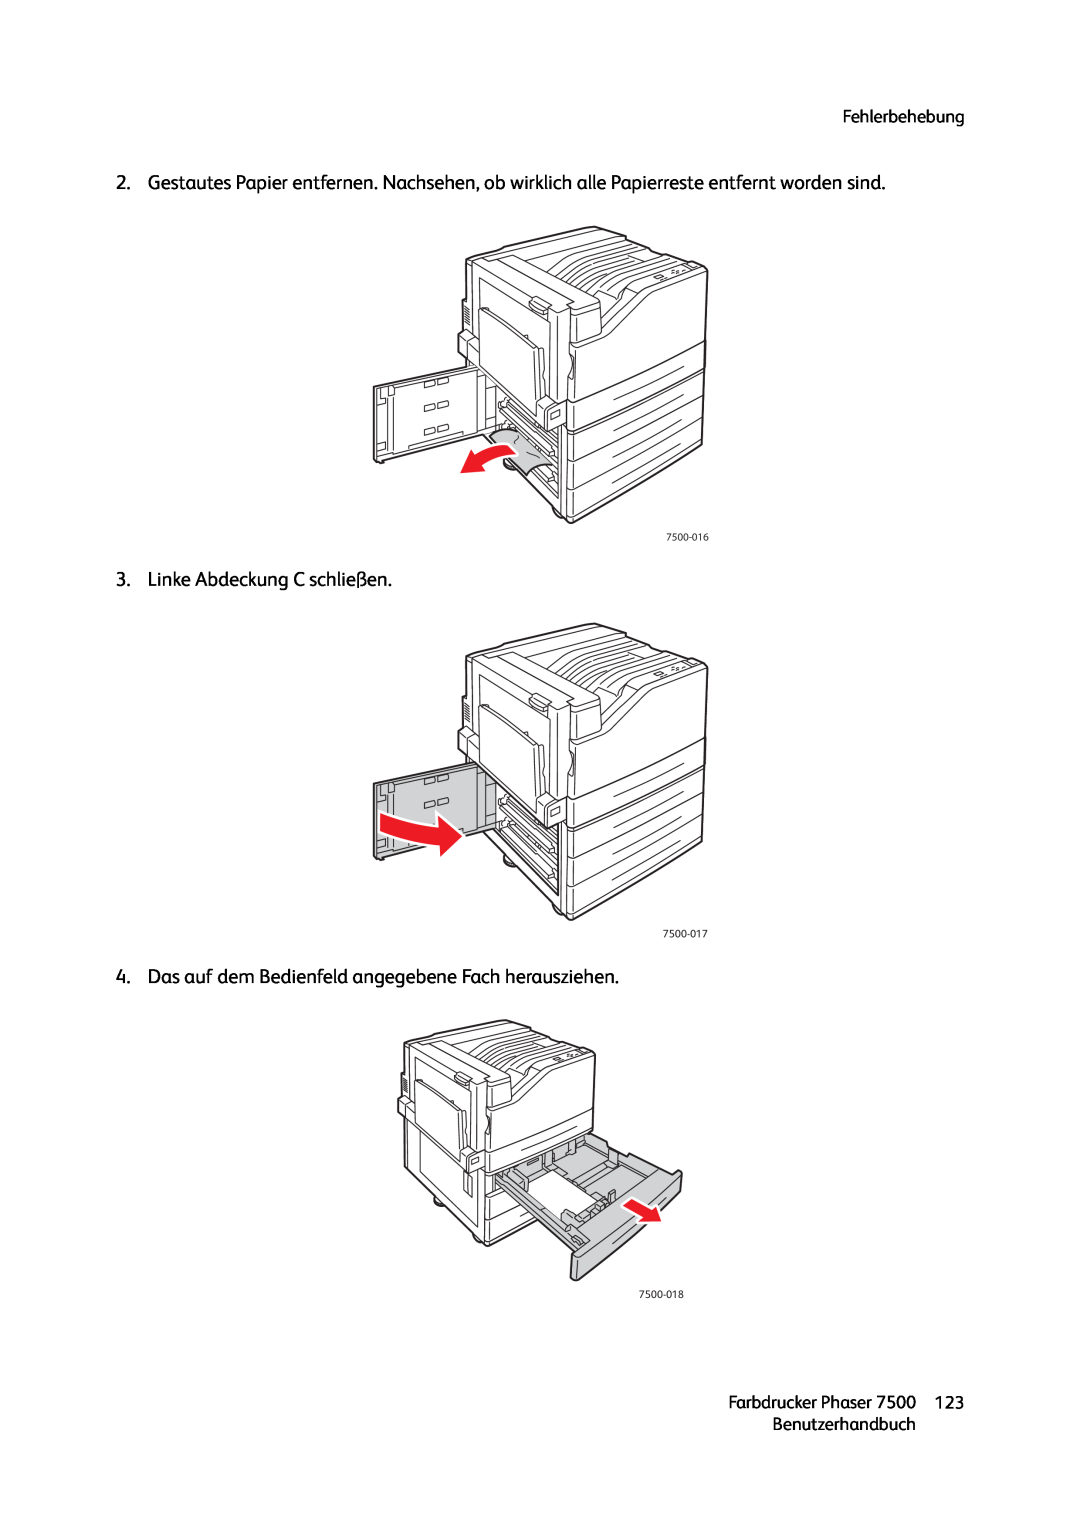 Xerox 7500 color printer manual Linke Abdeckung C schließen 